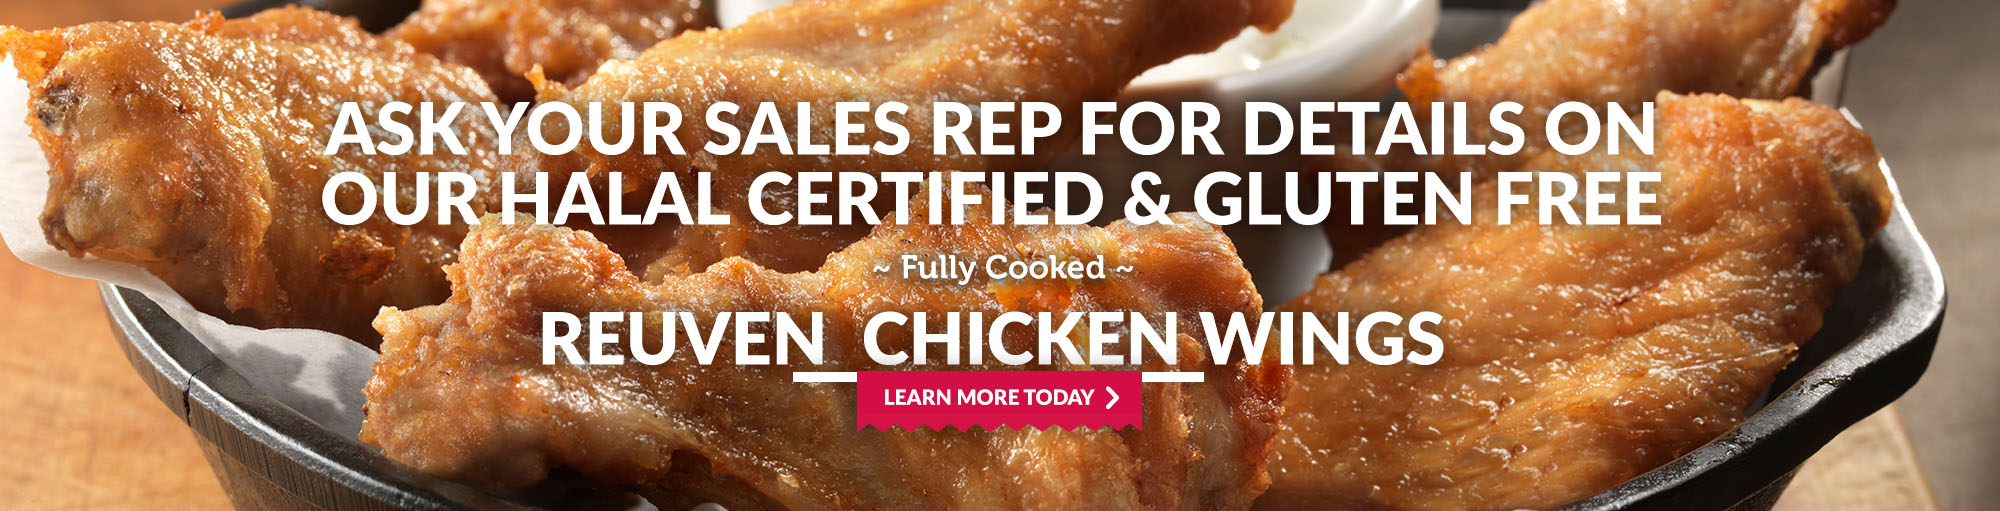 Halal Certified Chicken Wings